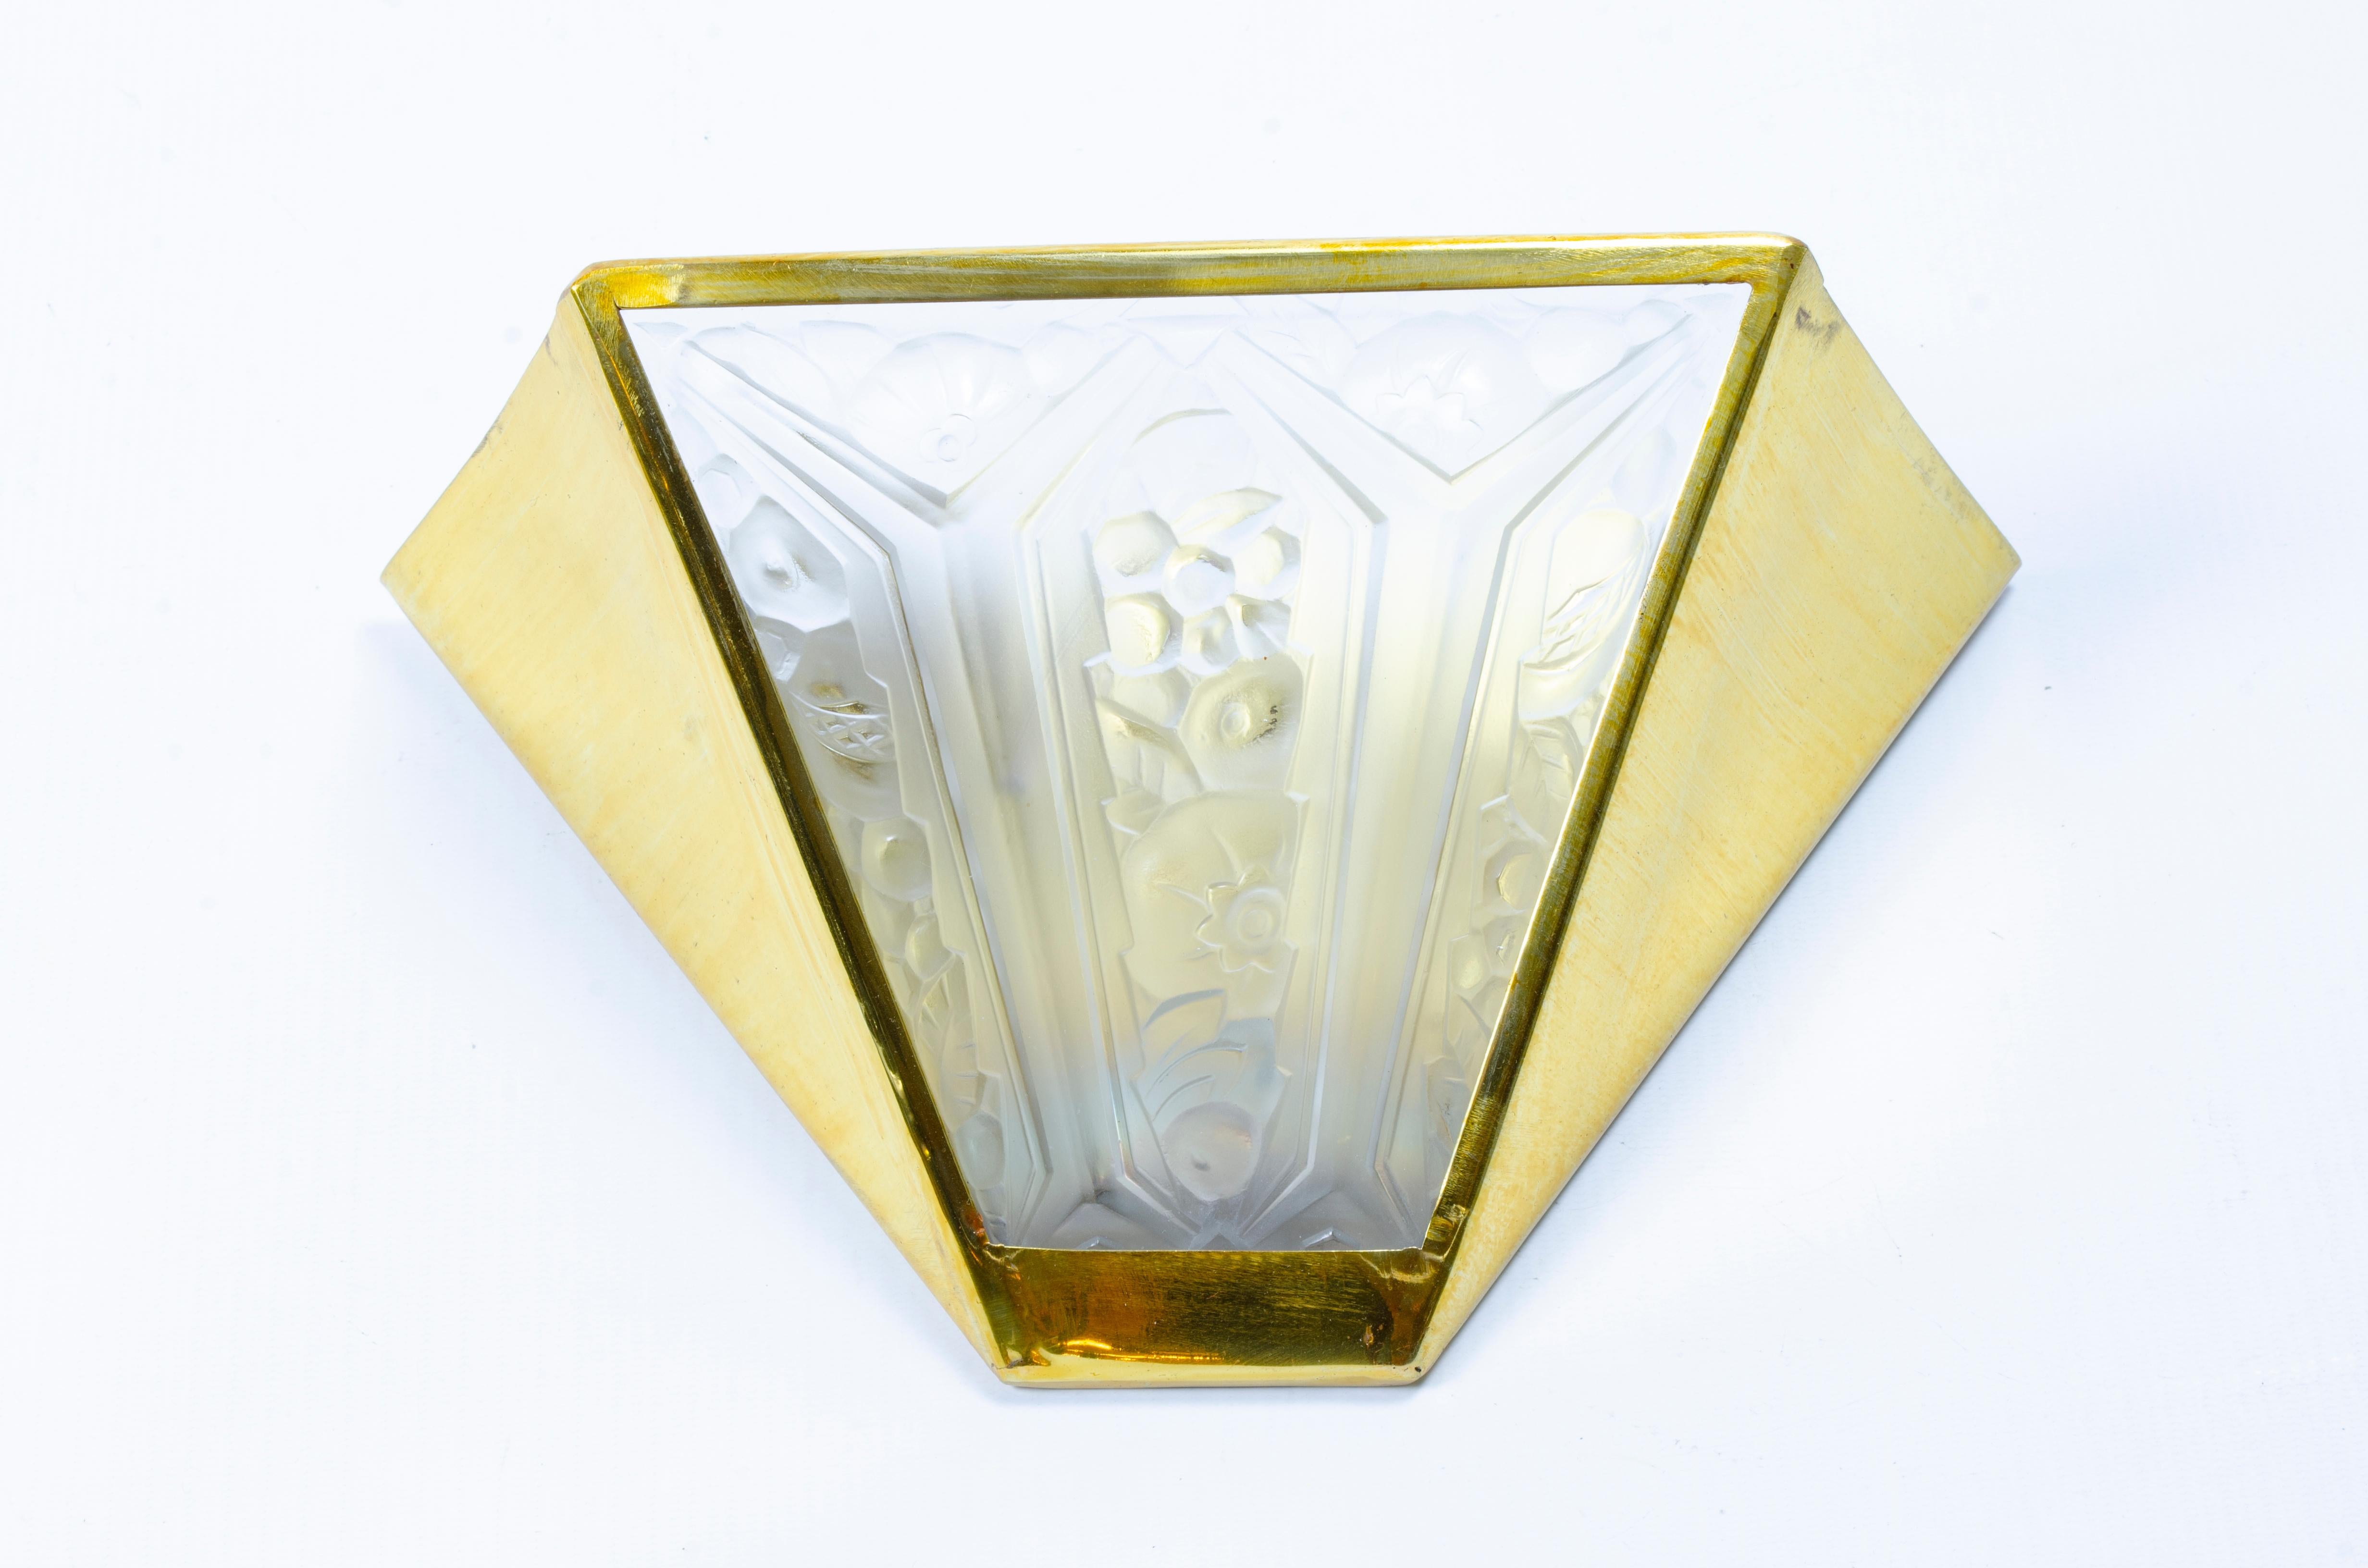 Paar Art Déco-Leuchter, Bronzerahmen und satinierte Glasplatten, Blumenmodell, von Hanots Glashütte (1925-1946).

Frankreich, CIRCA 1930.